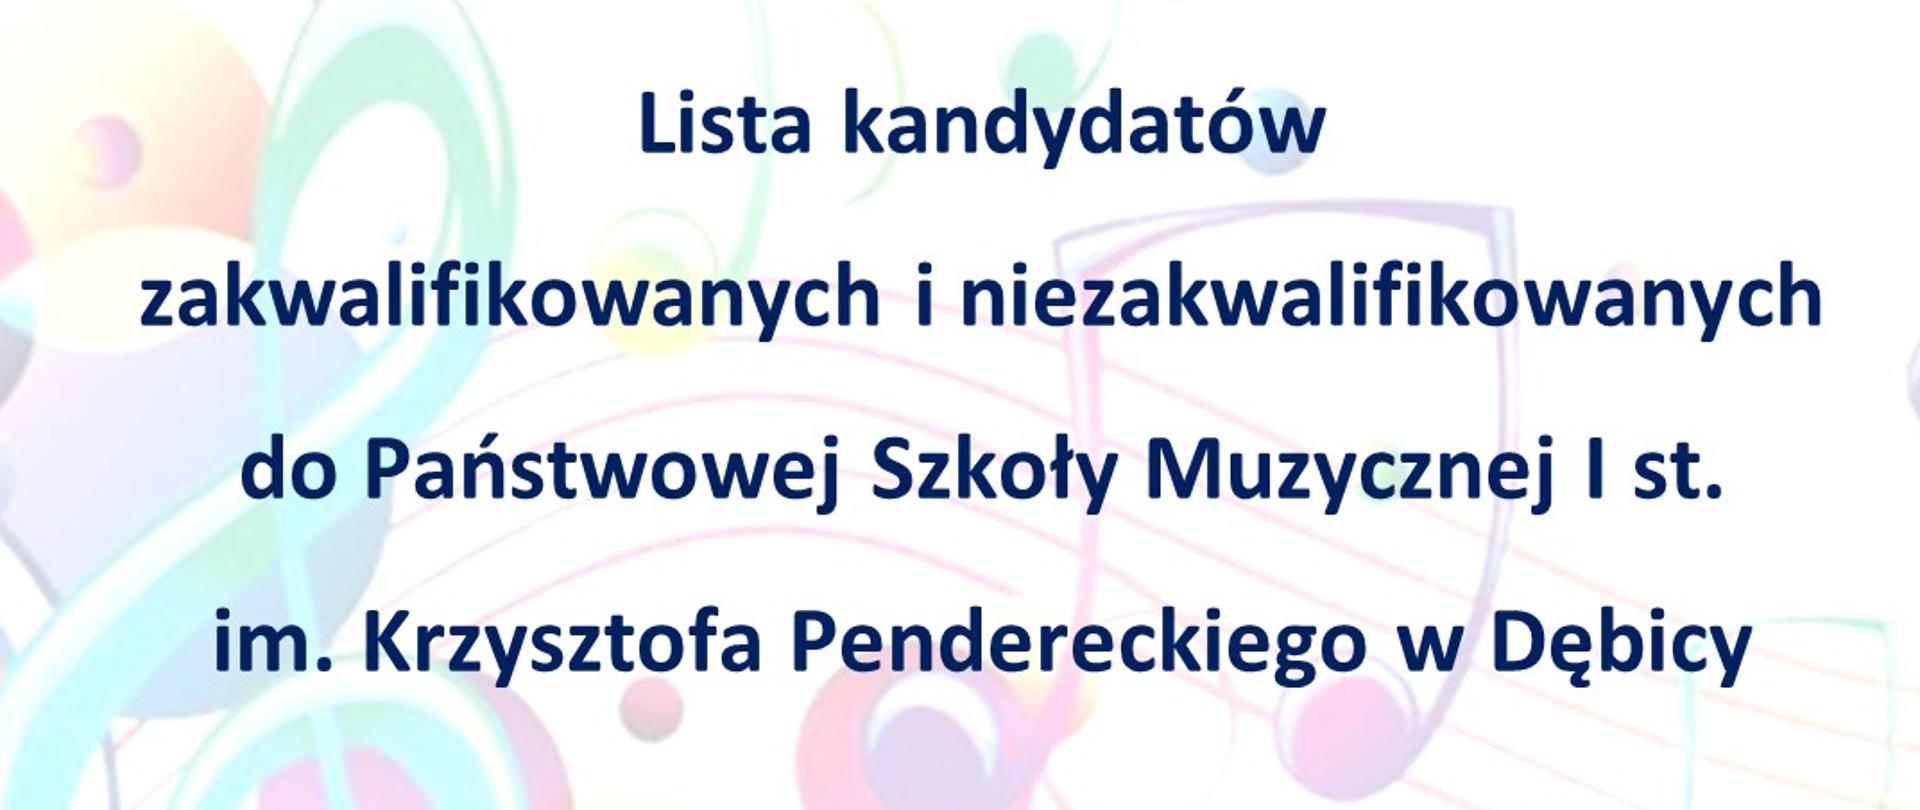 Plakat z napisem - lista kandydatów zakwalifikowanych i niezakwalifikowanych do PSM I st. w Dębicy; w tle kolorowe nuty i klucz wiolinowy